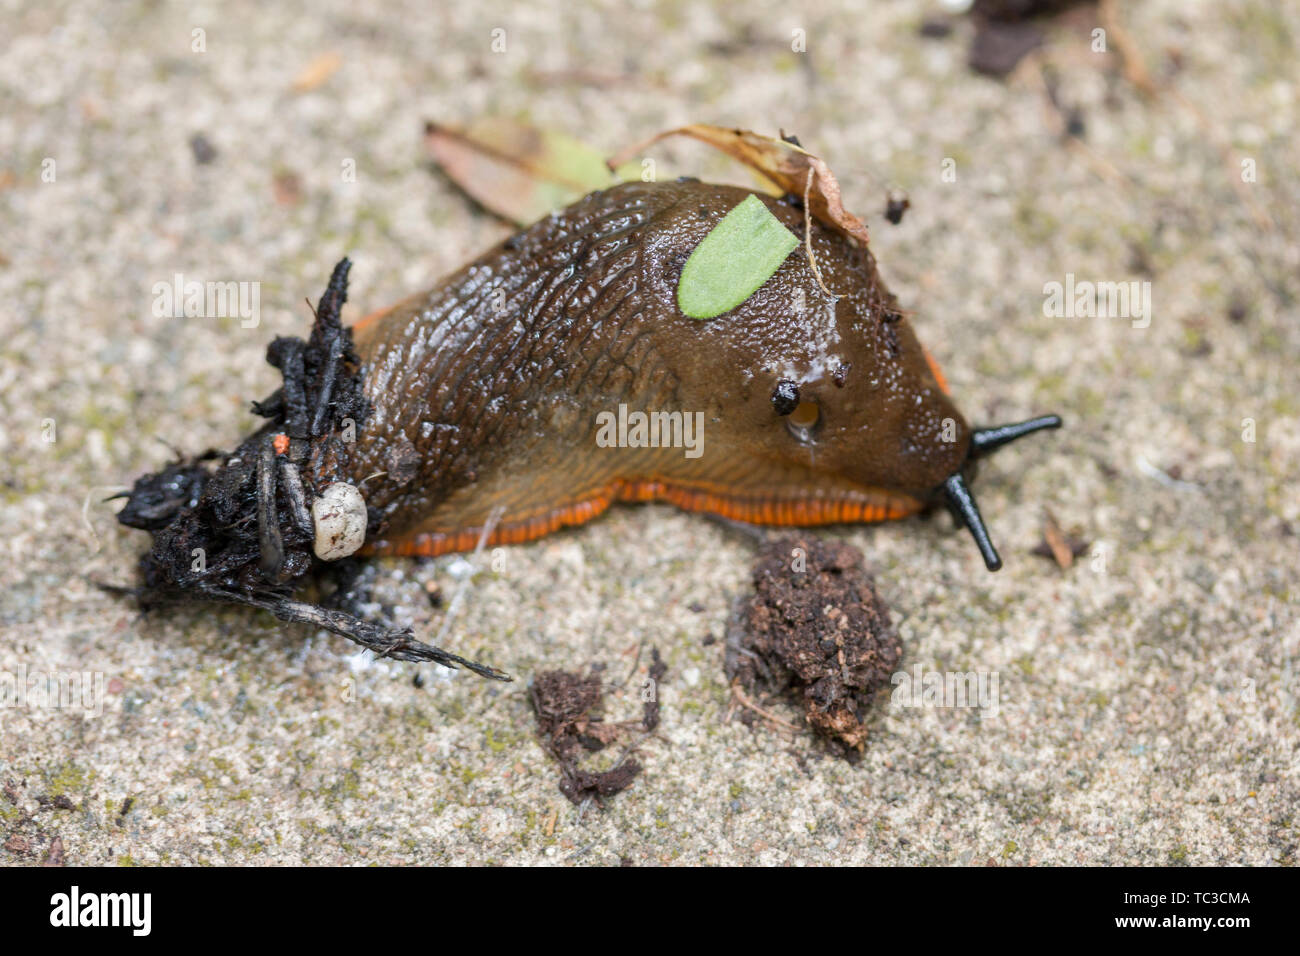 Orange variété de la grande Black Slug Arion ater agg rampant sur le bois Cotswolds Royaume-Uni. Limaces dans la maison, escargots et limaces Banque D'Images